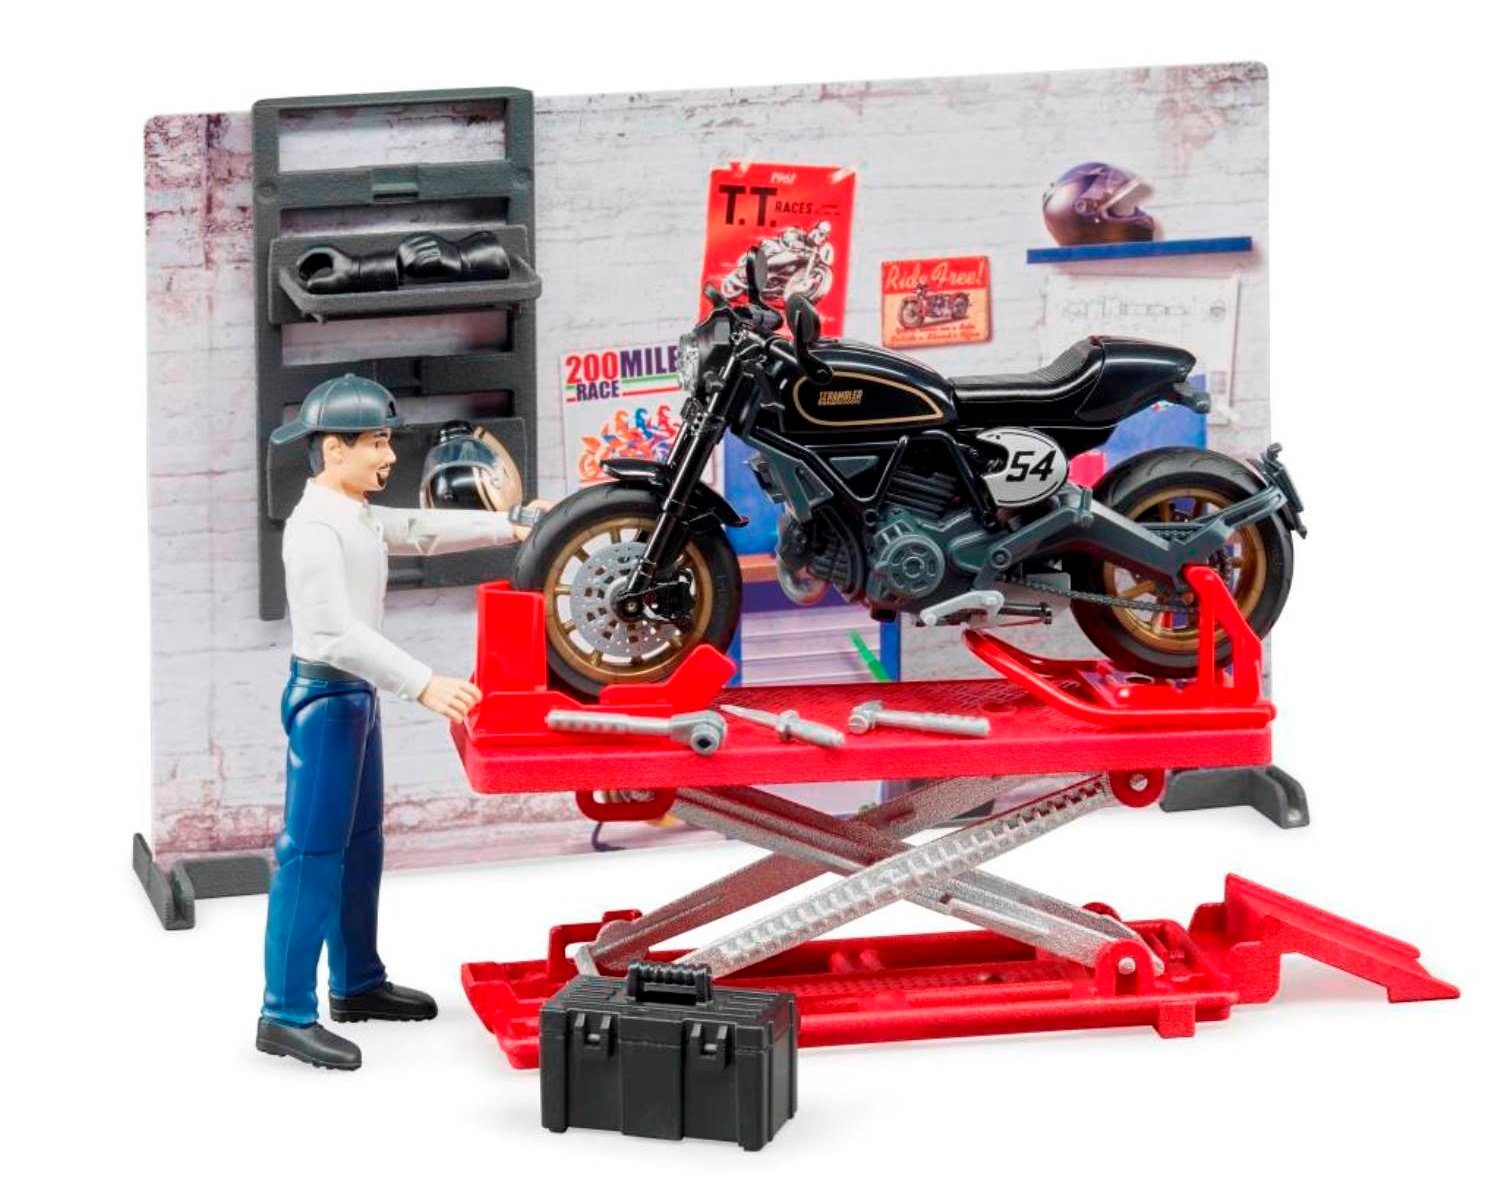 Hebebühne, Cafe mit Motorrad, Stellfüße detailgetreue Spielzeug-LKW 62101 bworld Scrambler Motorrad-Werkstatt Racer, Bruder® Ducati